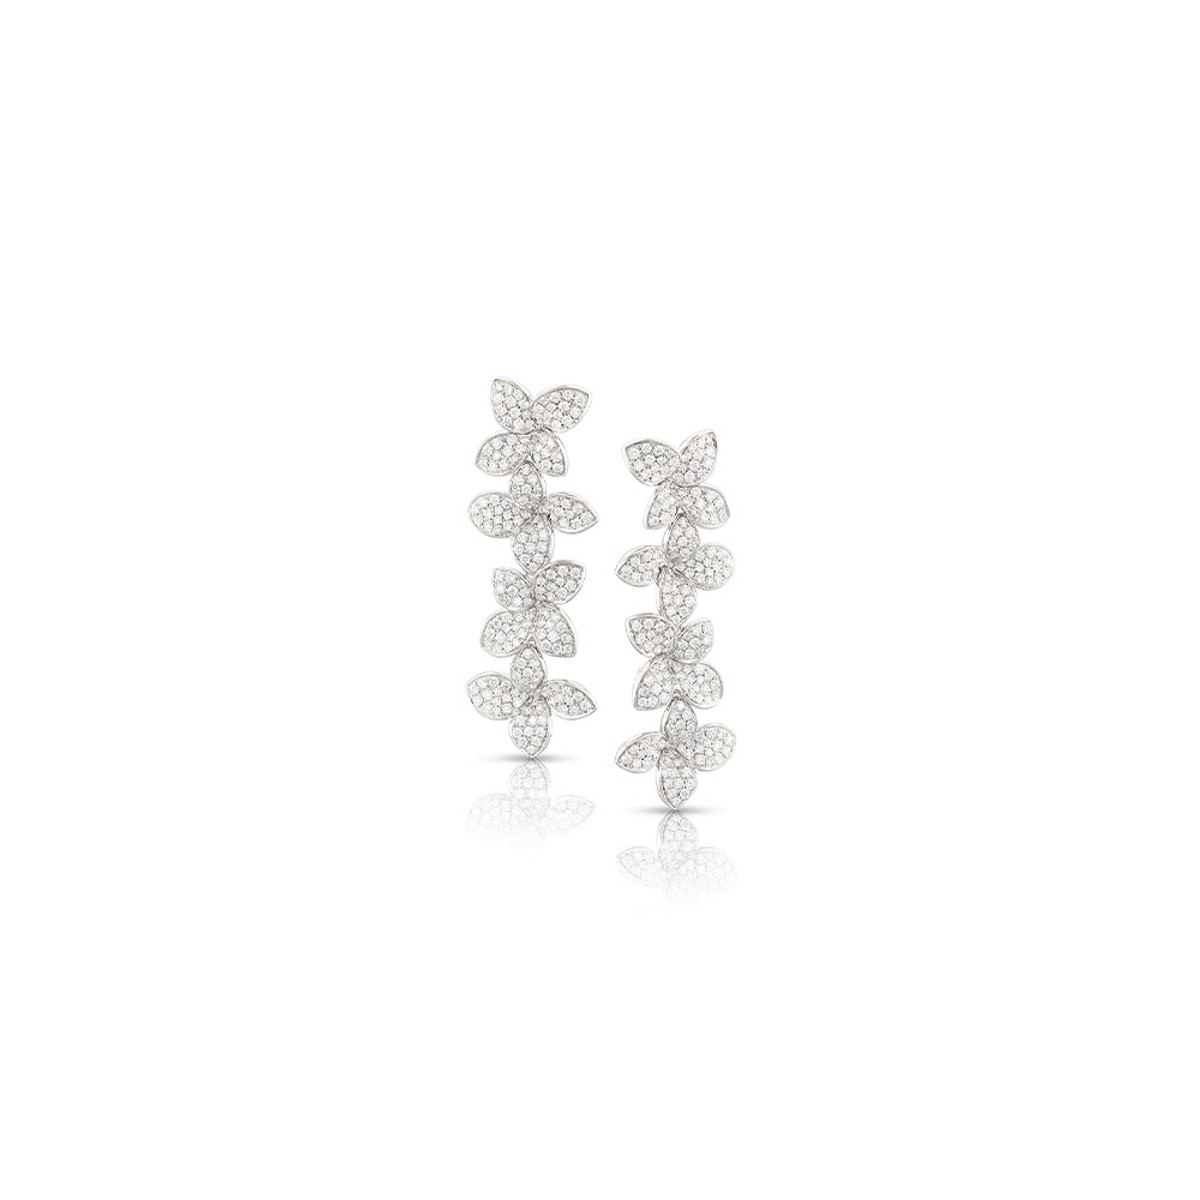 Pasquale Bruni 18K White Gold Giardini Segreti Diamond Earrings-42393 Product Image